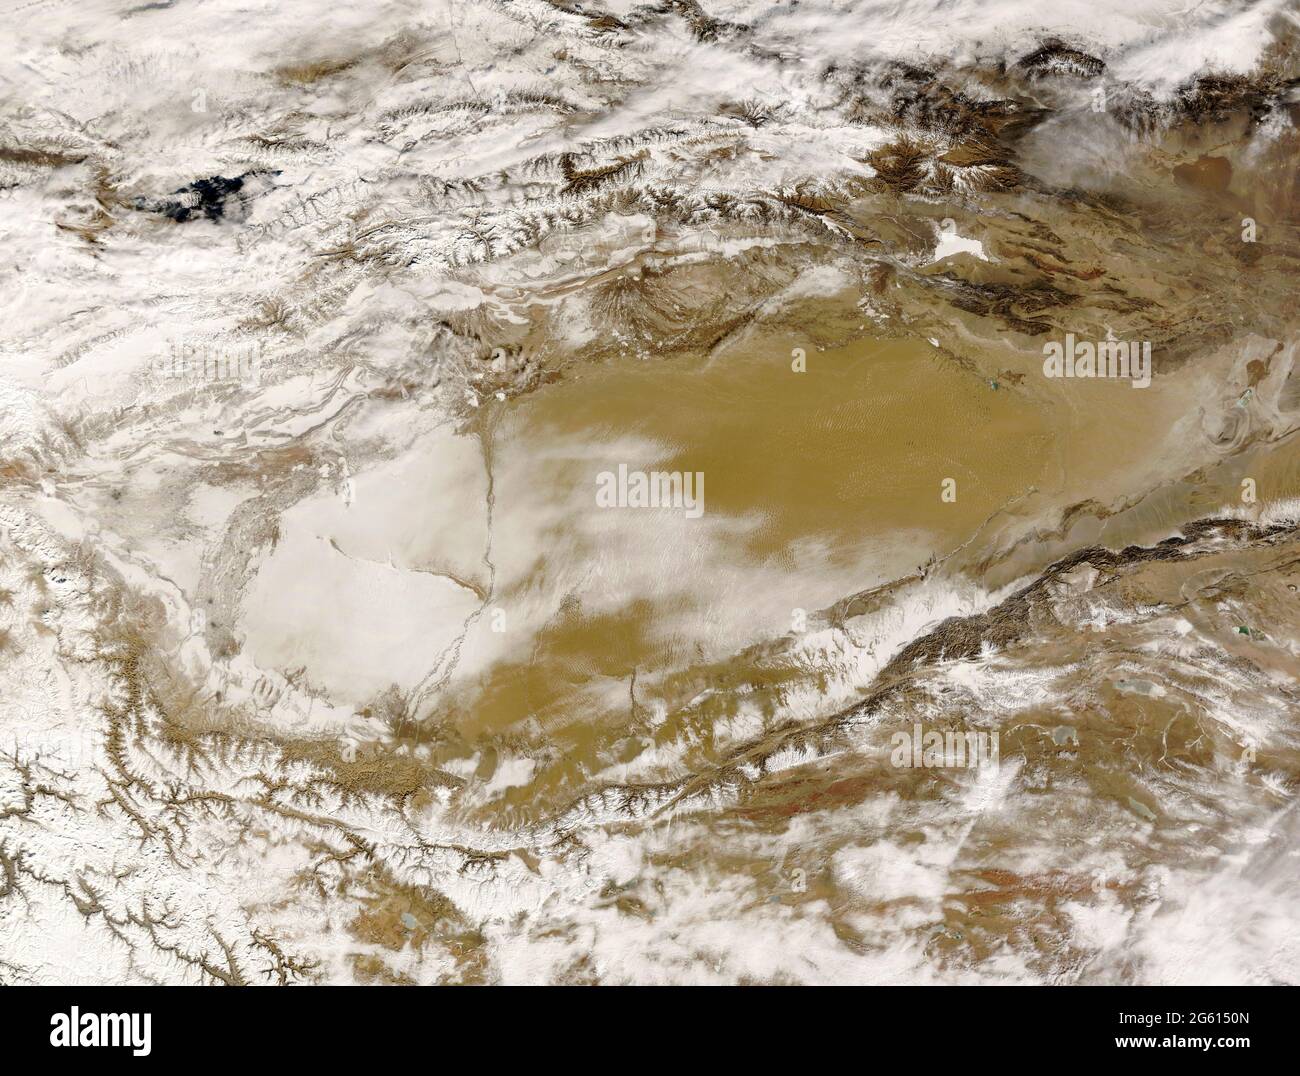 DESIERTO DE TAKLAMAKAN, ASIA CENTRAL - Mayo de 2008 - Una vista satelital invernal del desierto de Taklamakan en Asia Central - Foto: Geopix/NASA Foto de stock